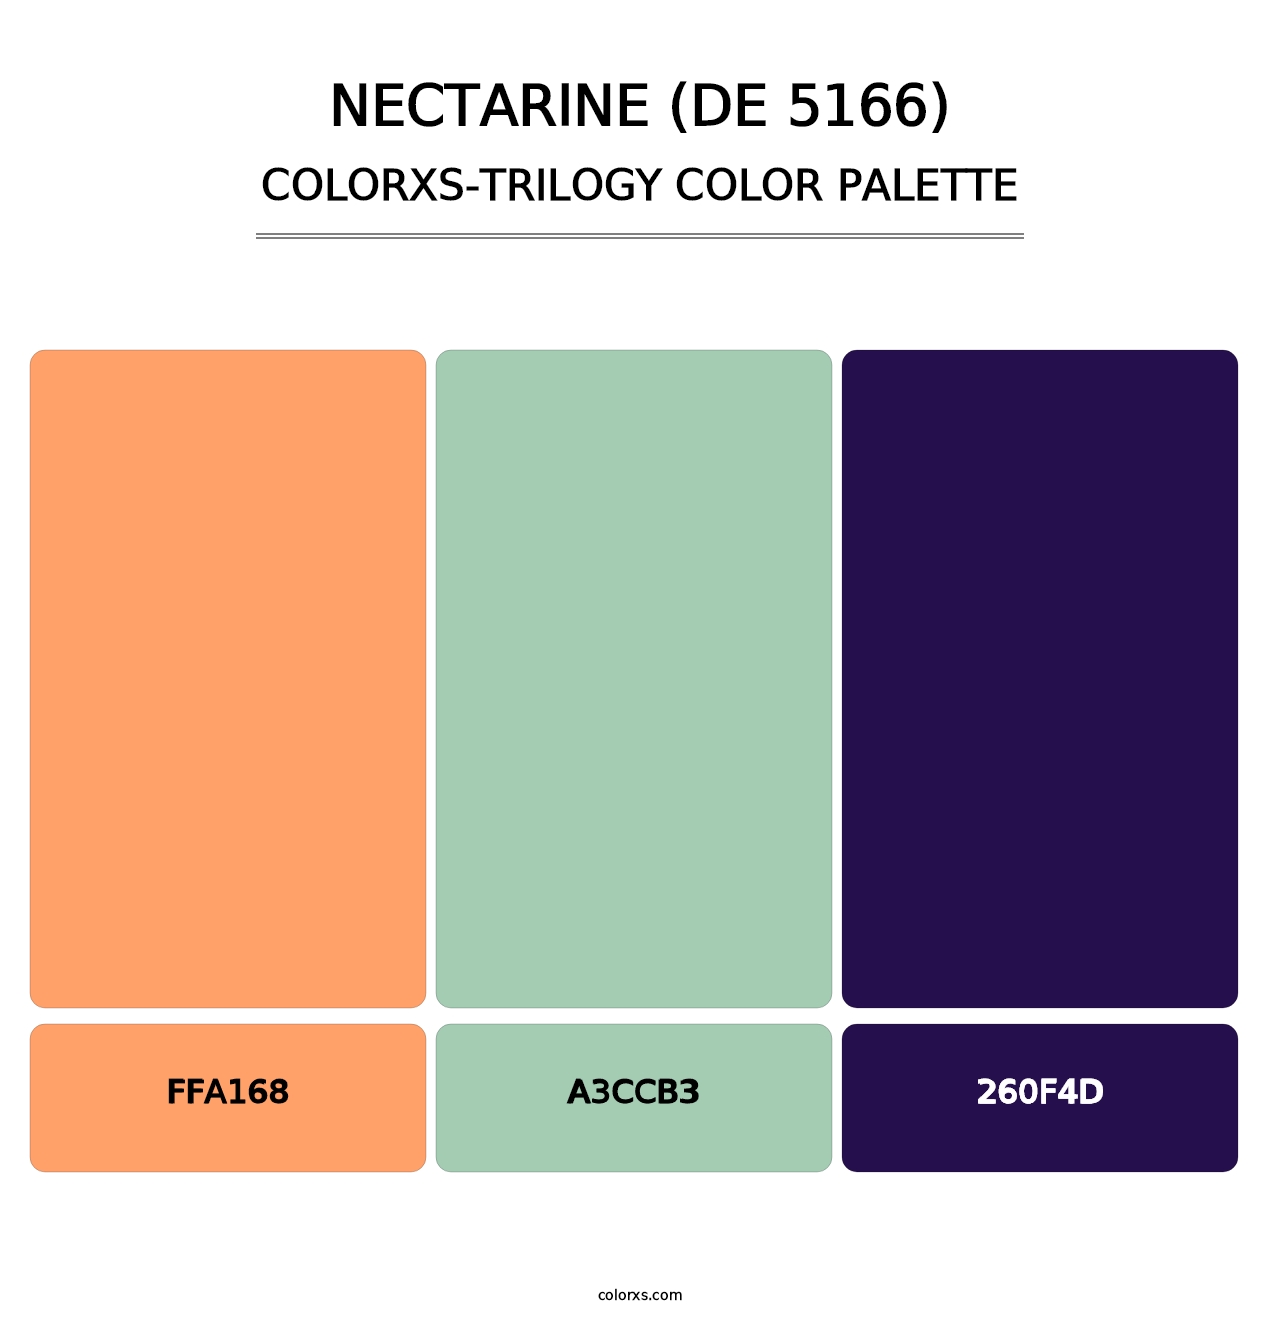 Nectarine (DE 5166) - Colorxs Trilogy Palette